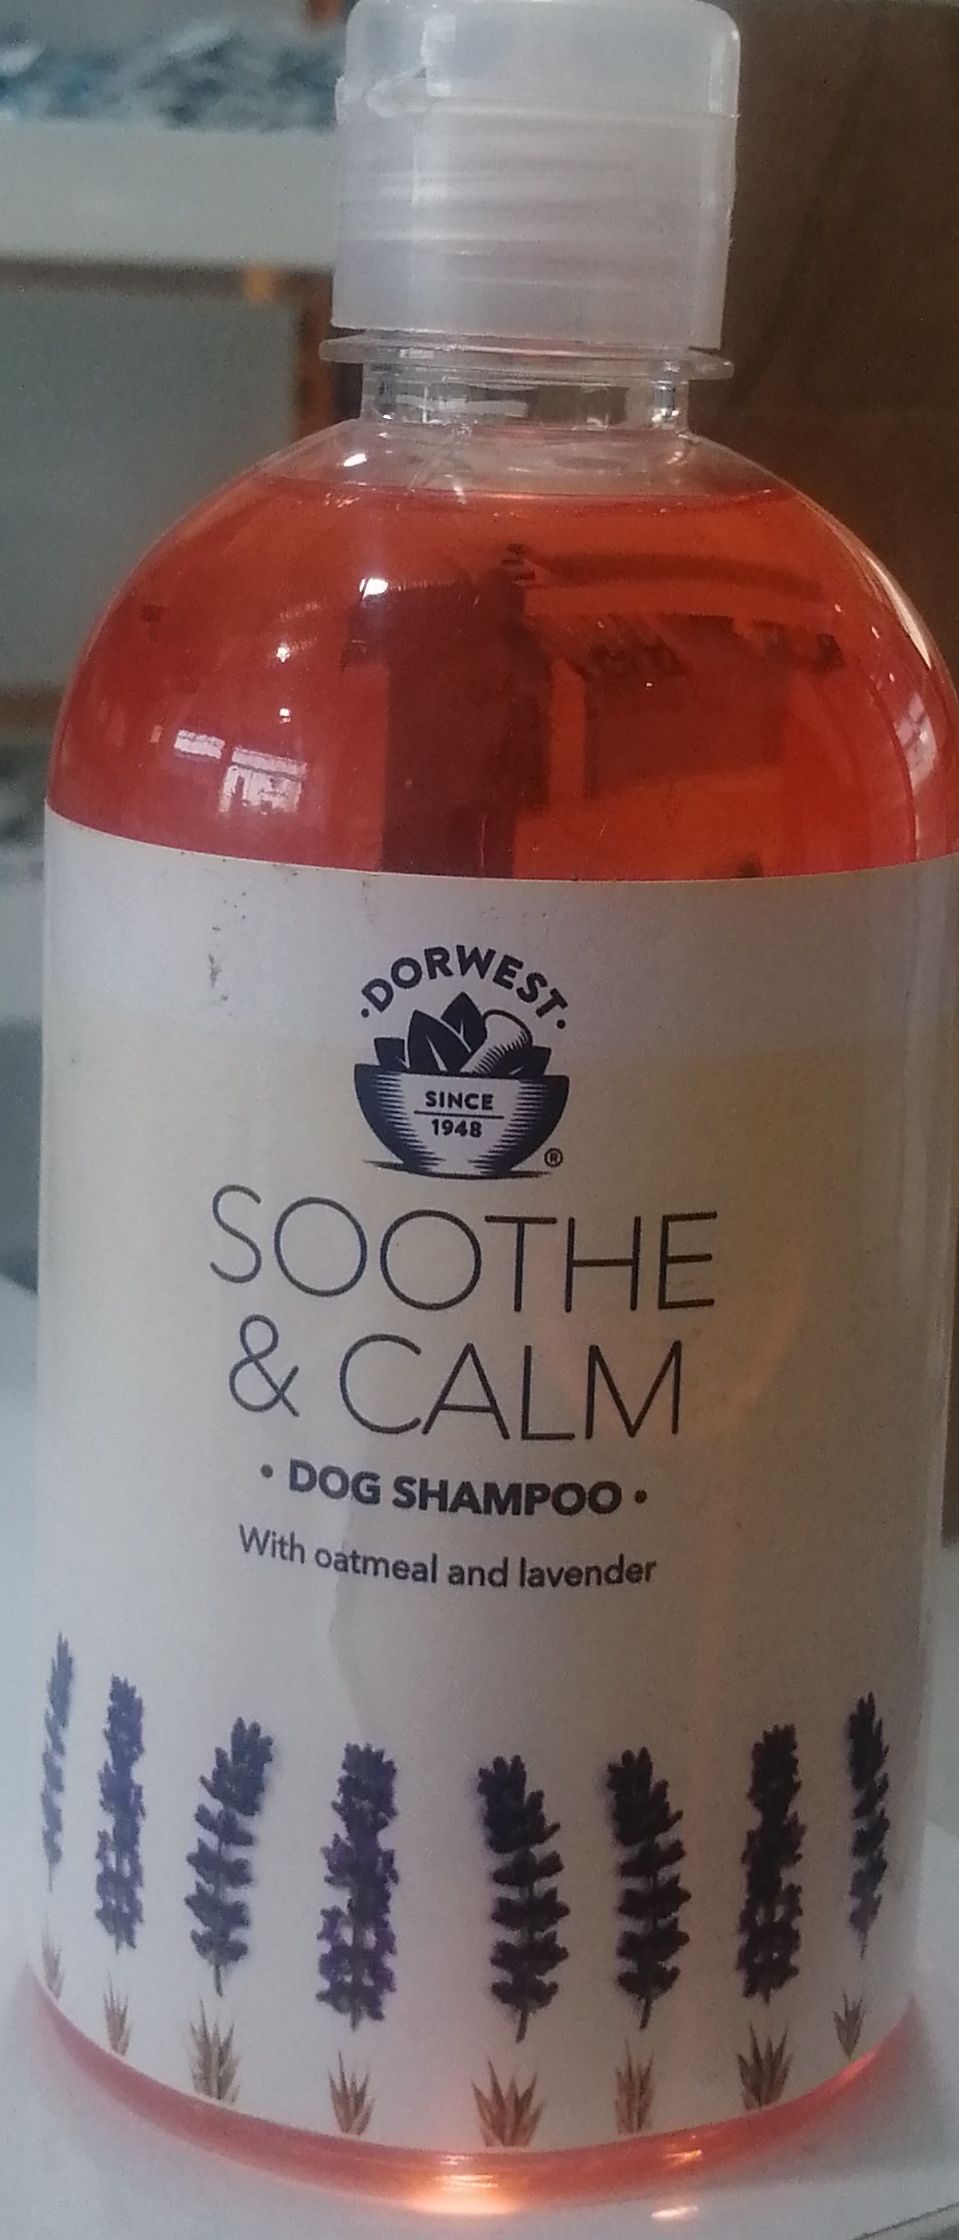 Dorwest shampoo